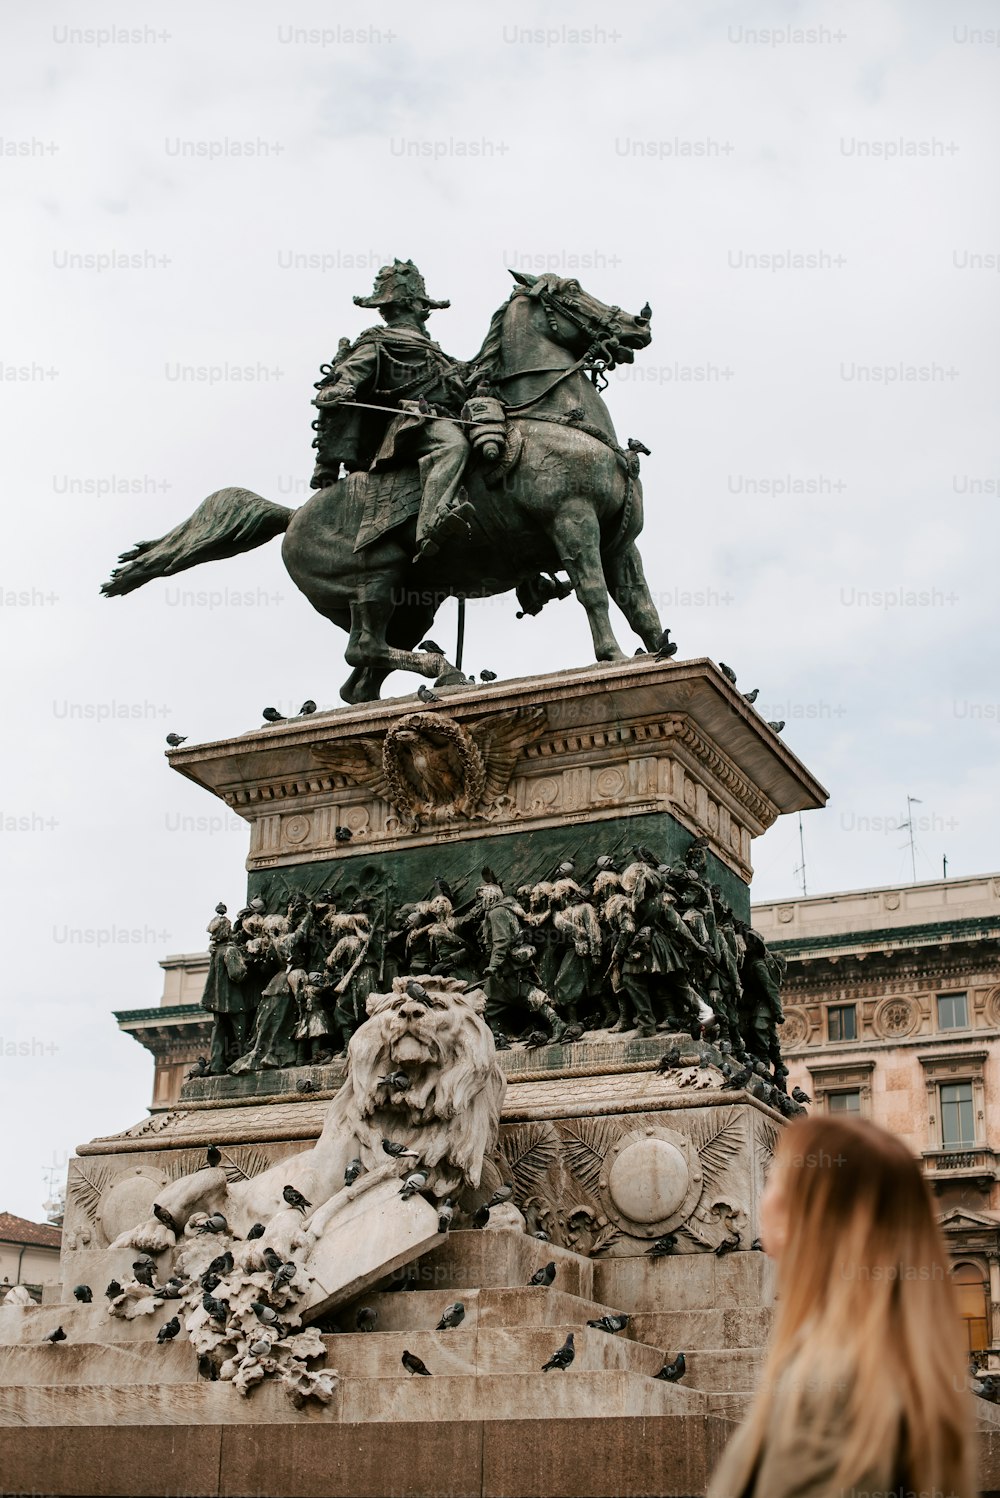 Una statua di un uomo su un cavallo su un piedistallo